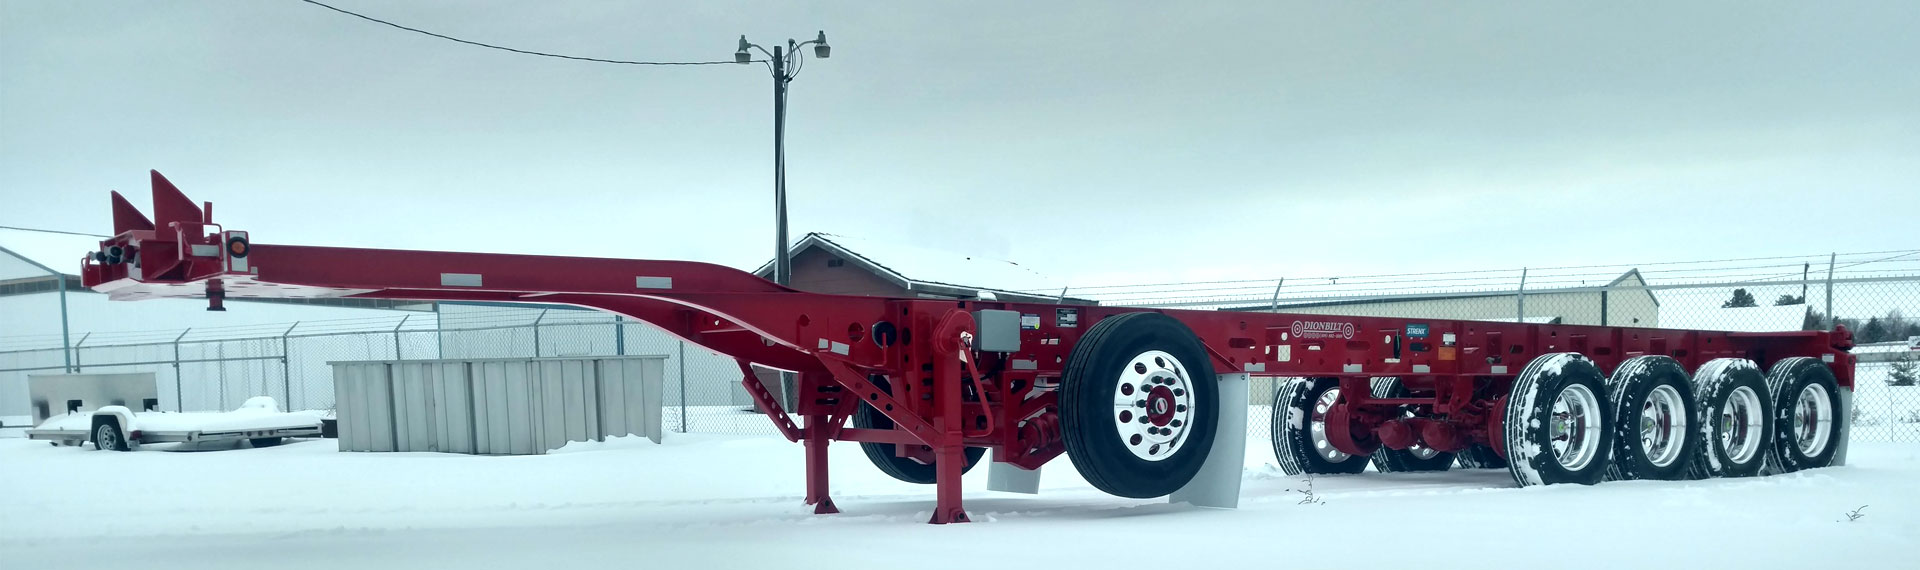 长而轻的拖车底盘 , 由 Strenx® 100 制成 , 放置在雪地上